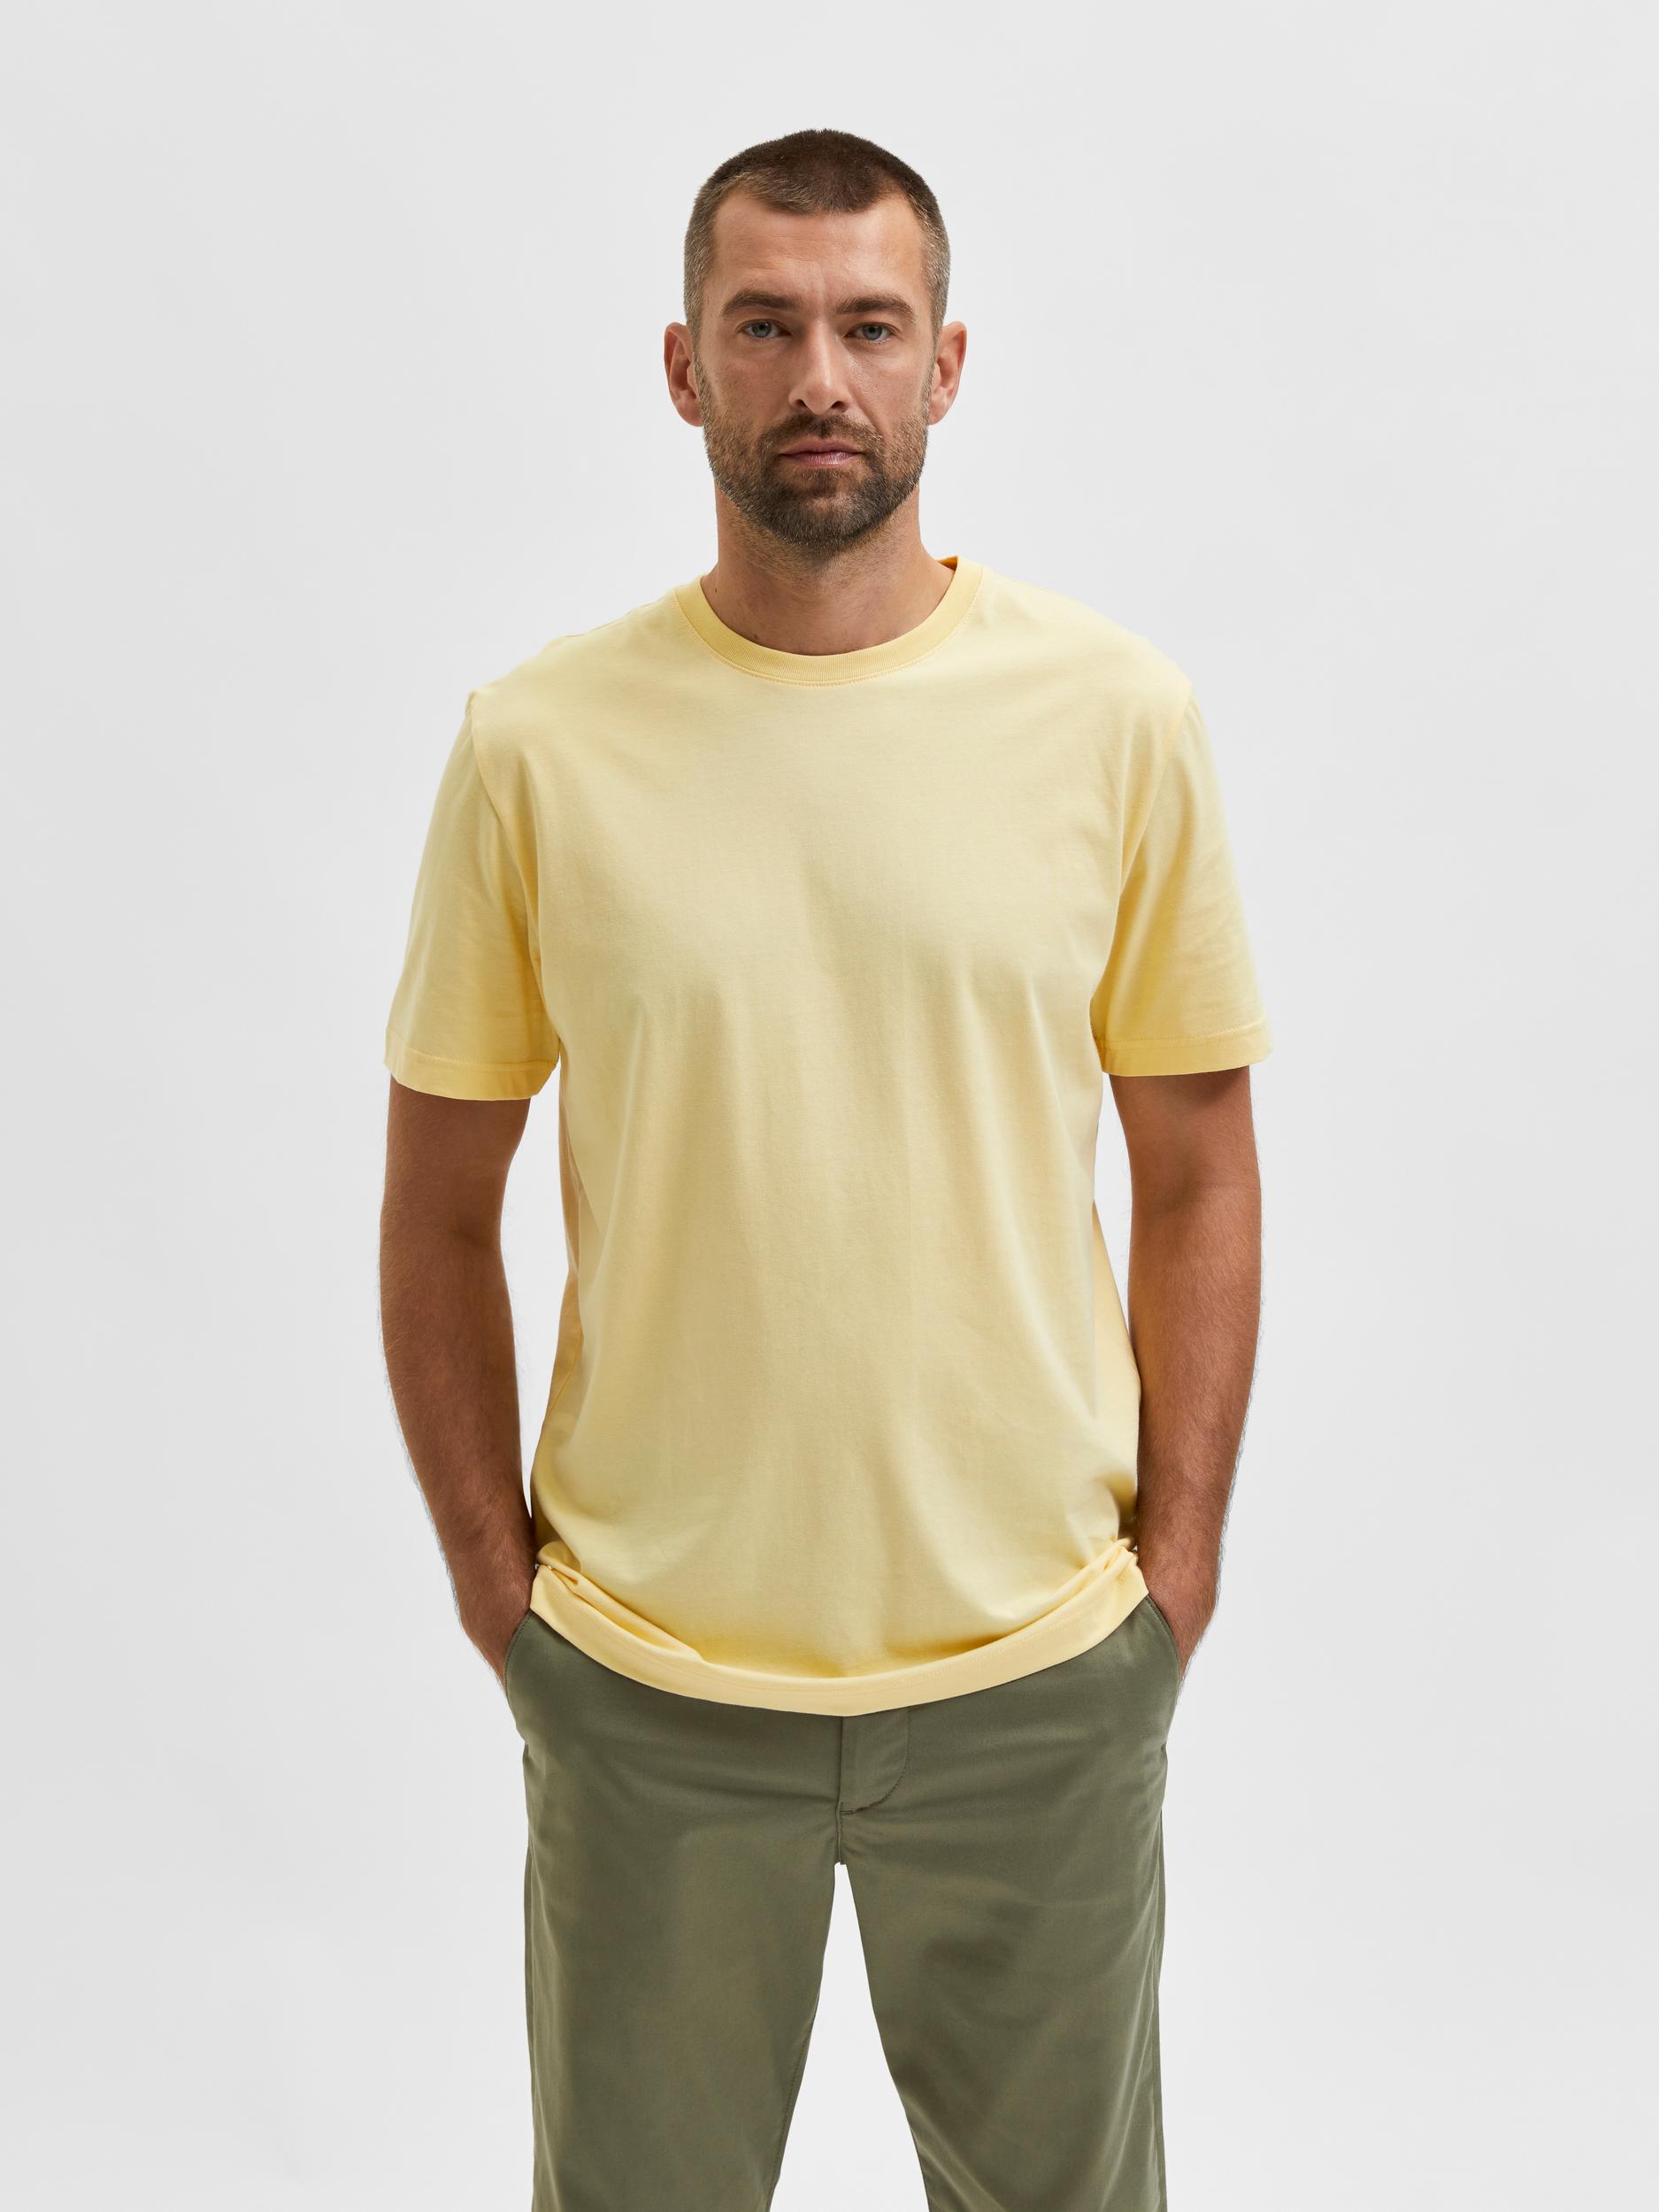  Norman T-shirt, Sunlight, L